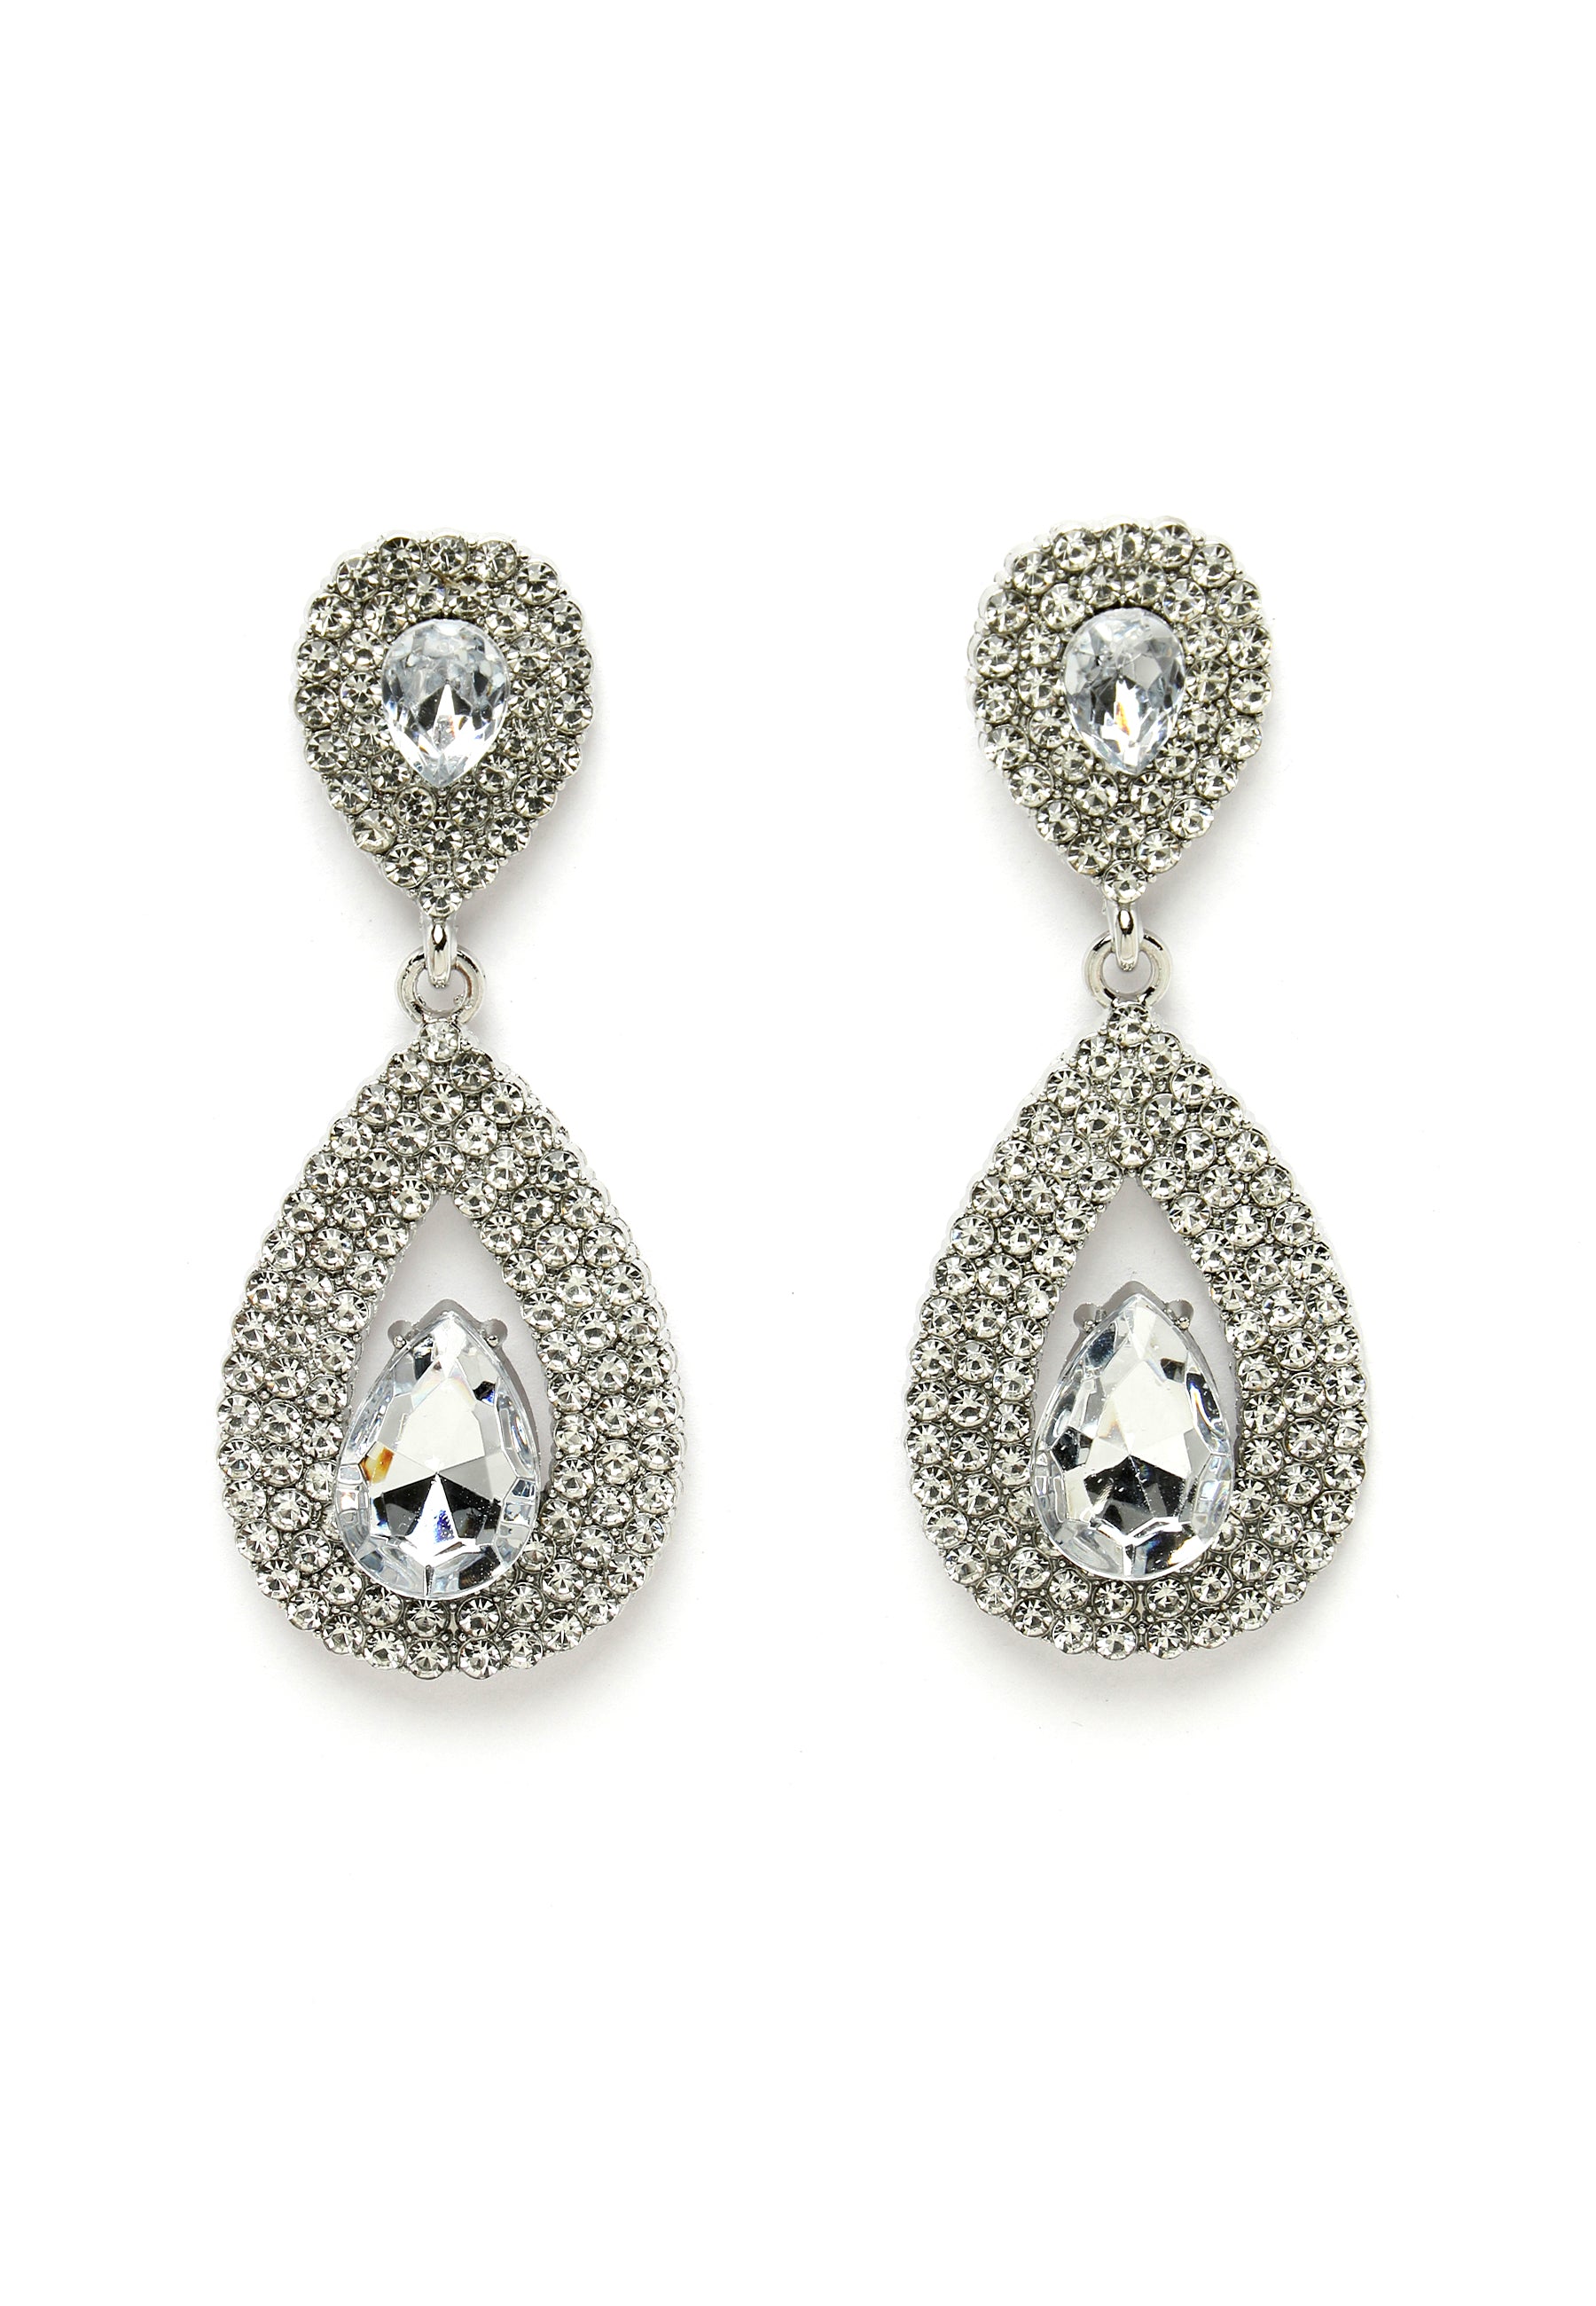 Avant-Garde Paris Silver-Colored Water Droplet Crystal Earrings